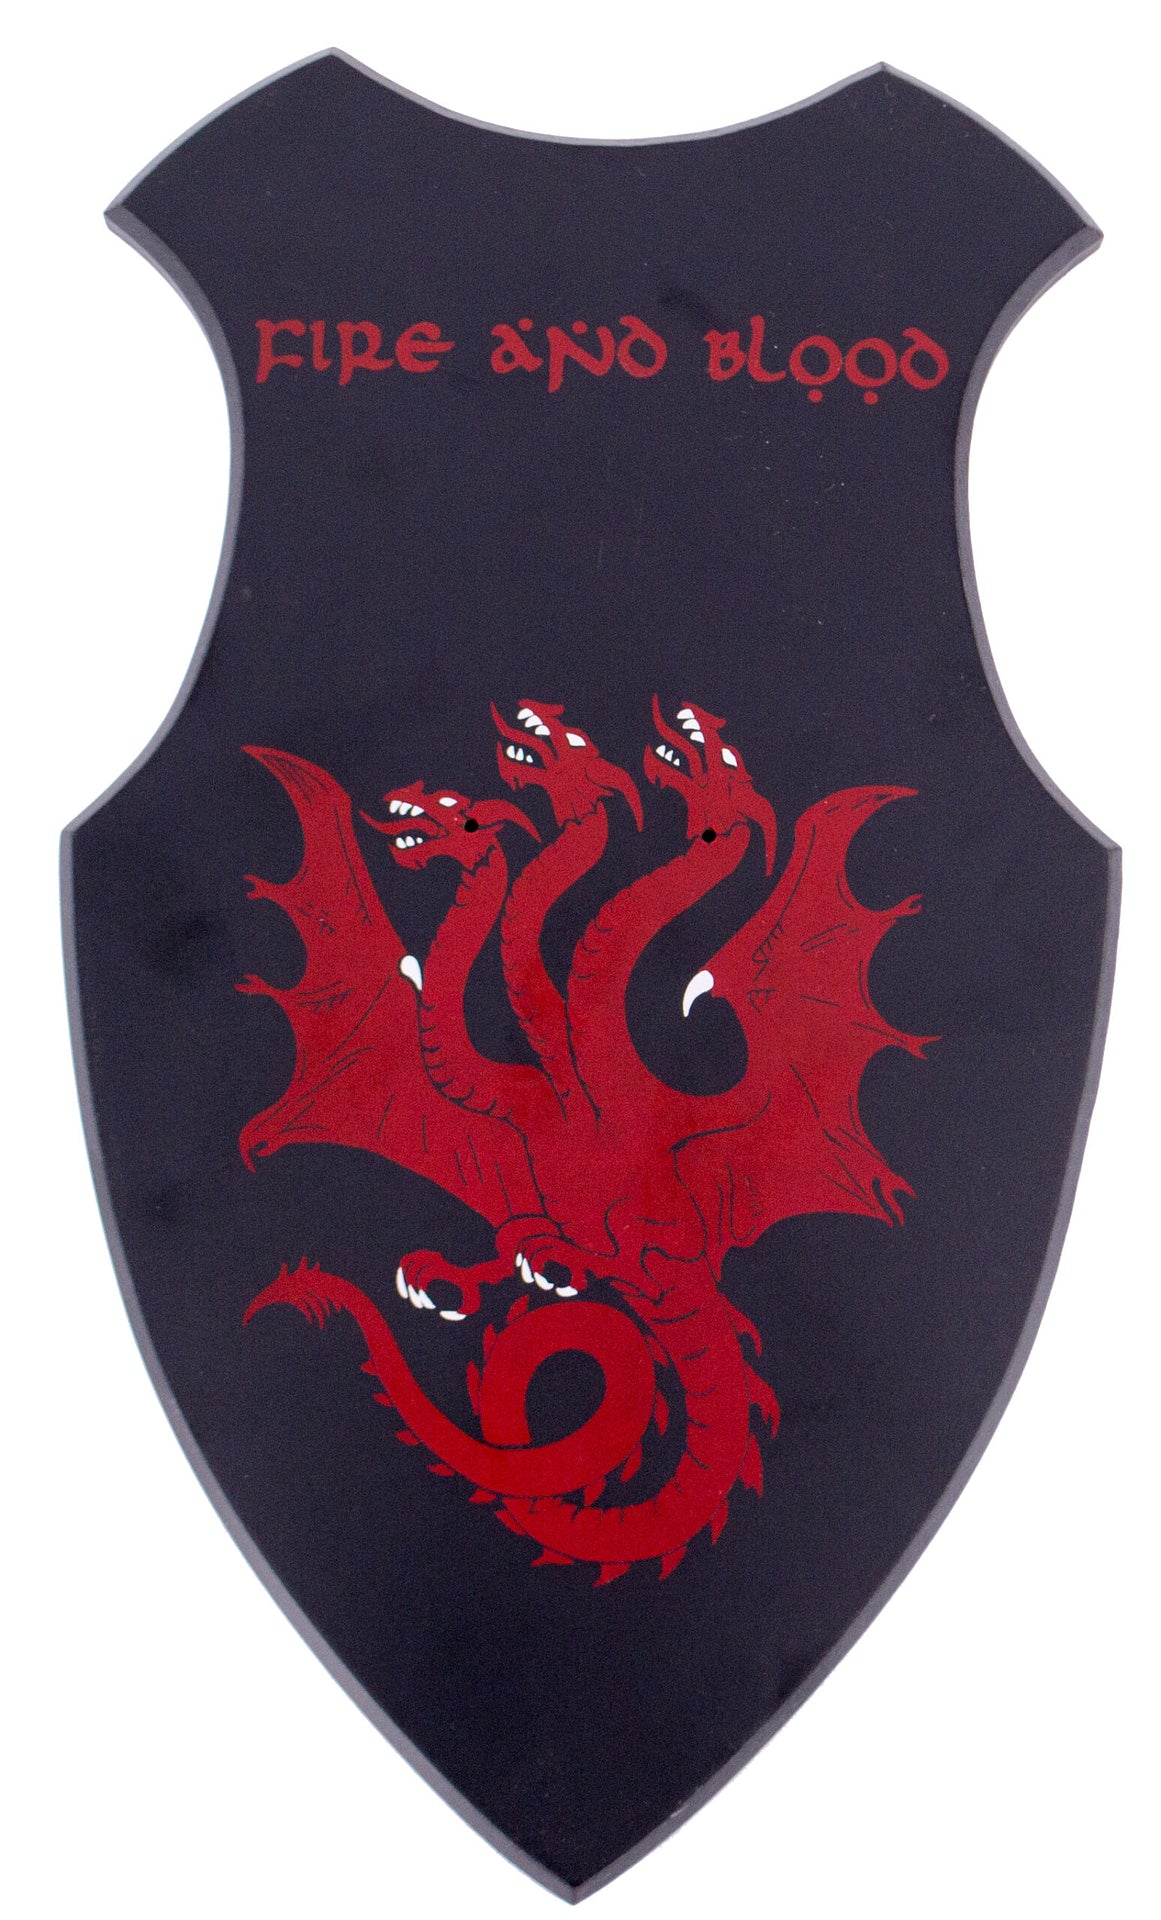 Soporte de pared de la Espada de fantasía de Daemon Targaryen de La Casa del Dragón con letras y dragones. Vendida por Espadas y más